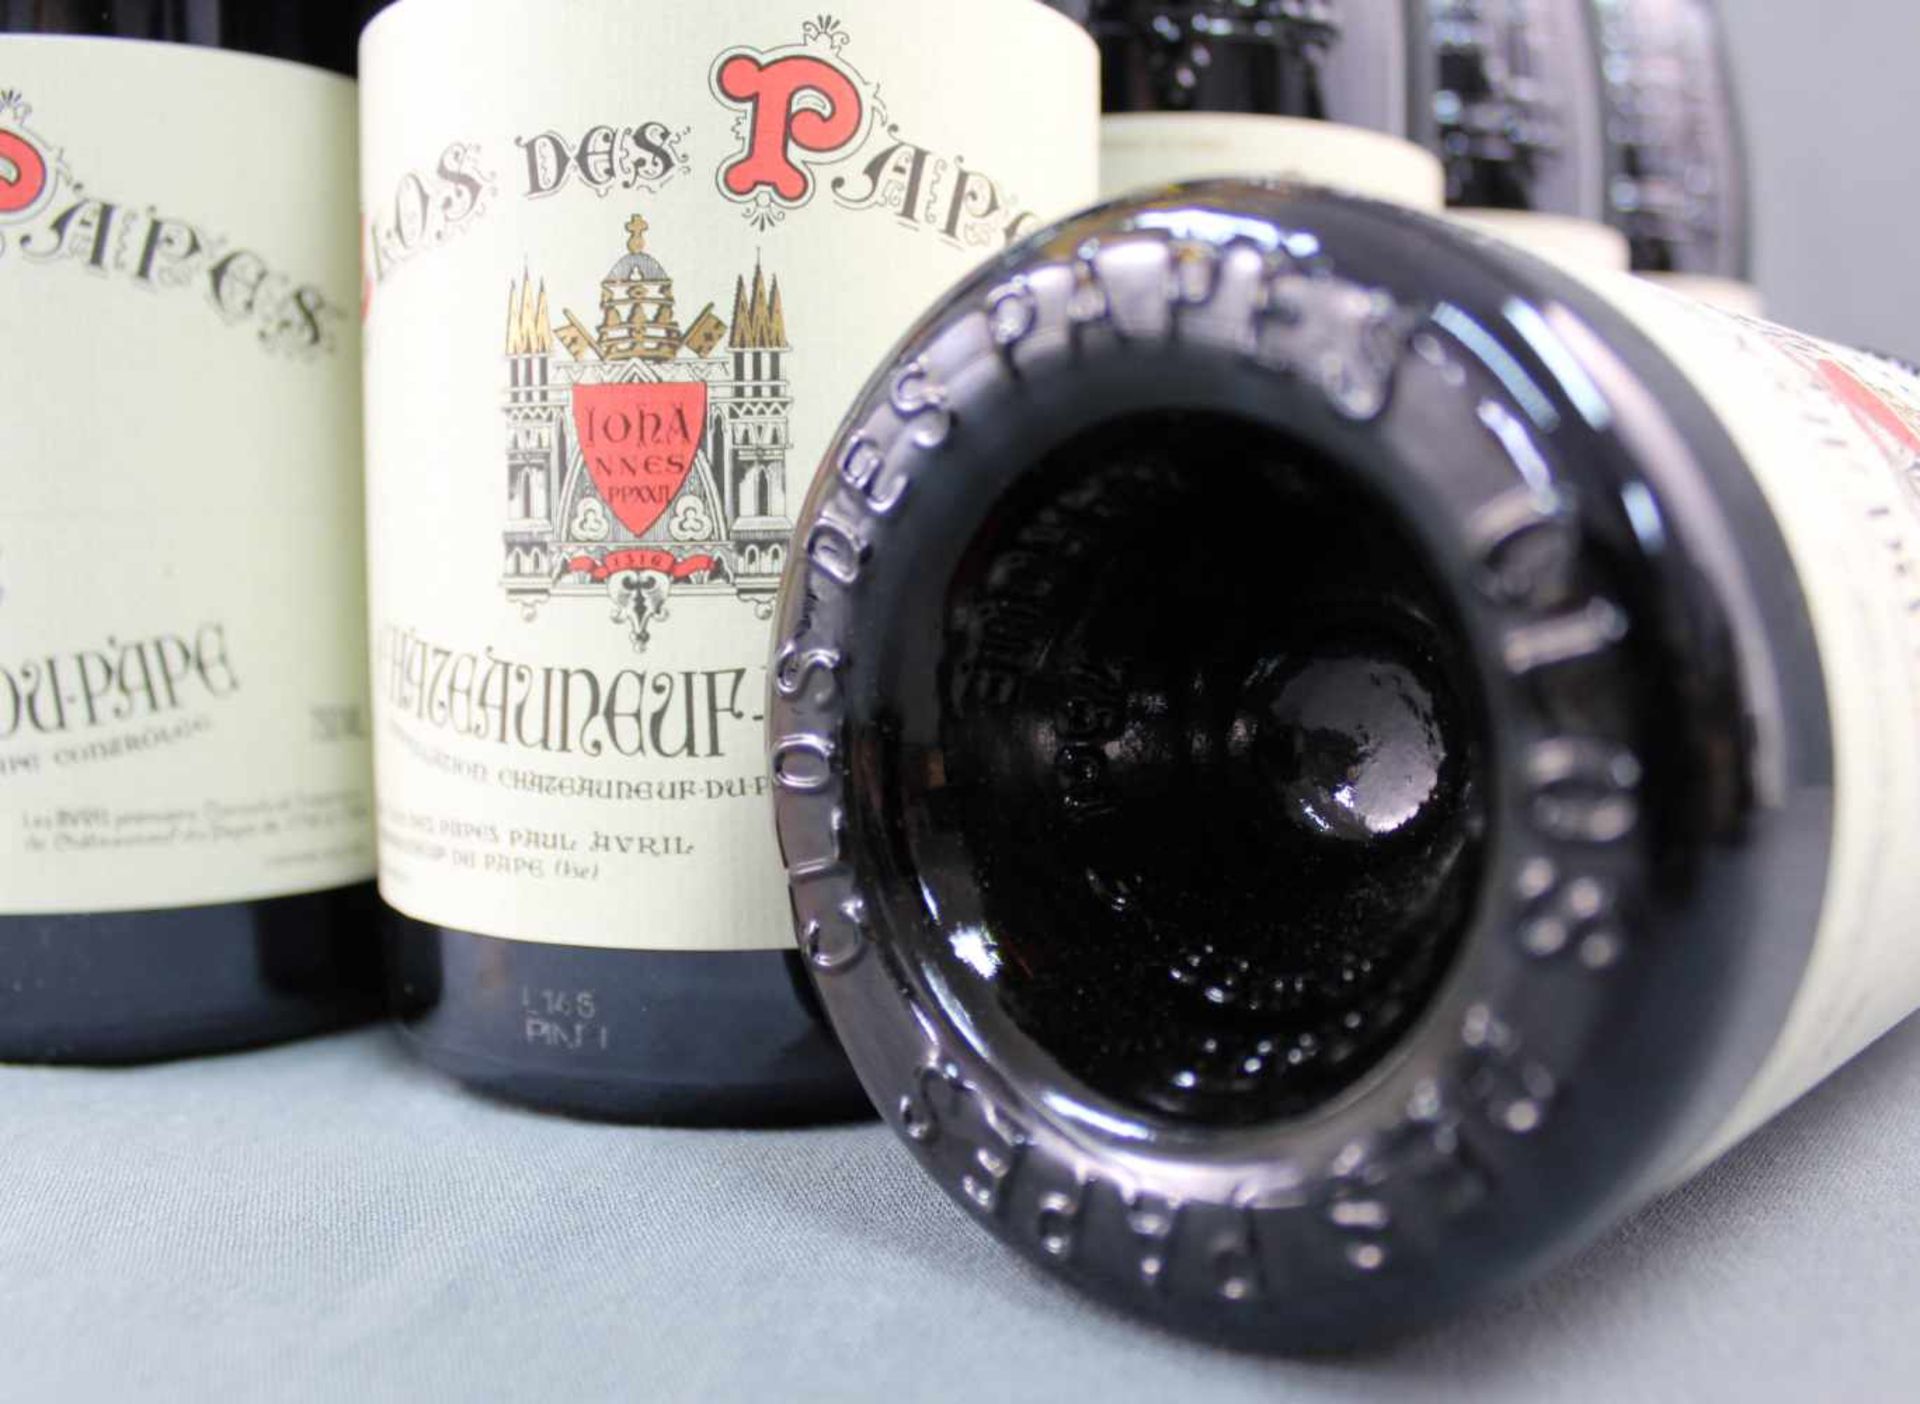 2014 Chateauneuf du Papes. "Clos des Papes". 14% Vol. 750 ml. 16 ganze Flaschen Rotwein - Bild 6 aus 6